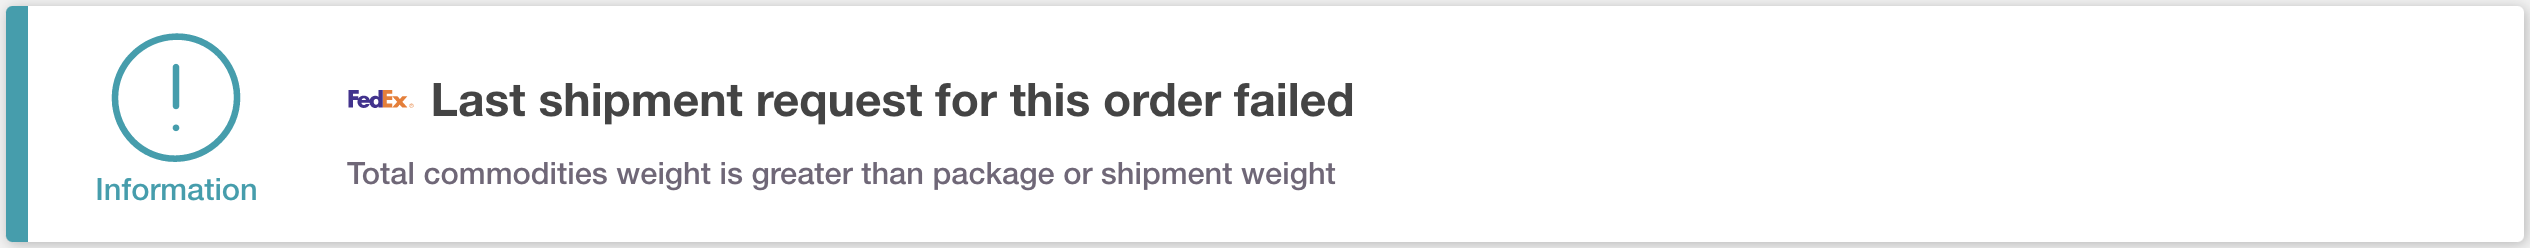 FedEx-weight-error.png